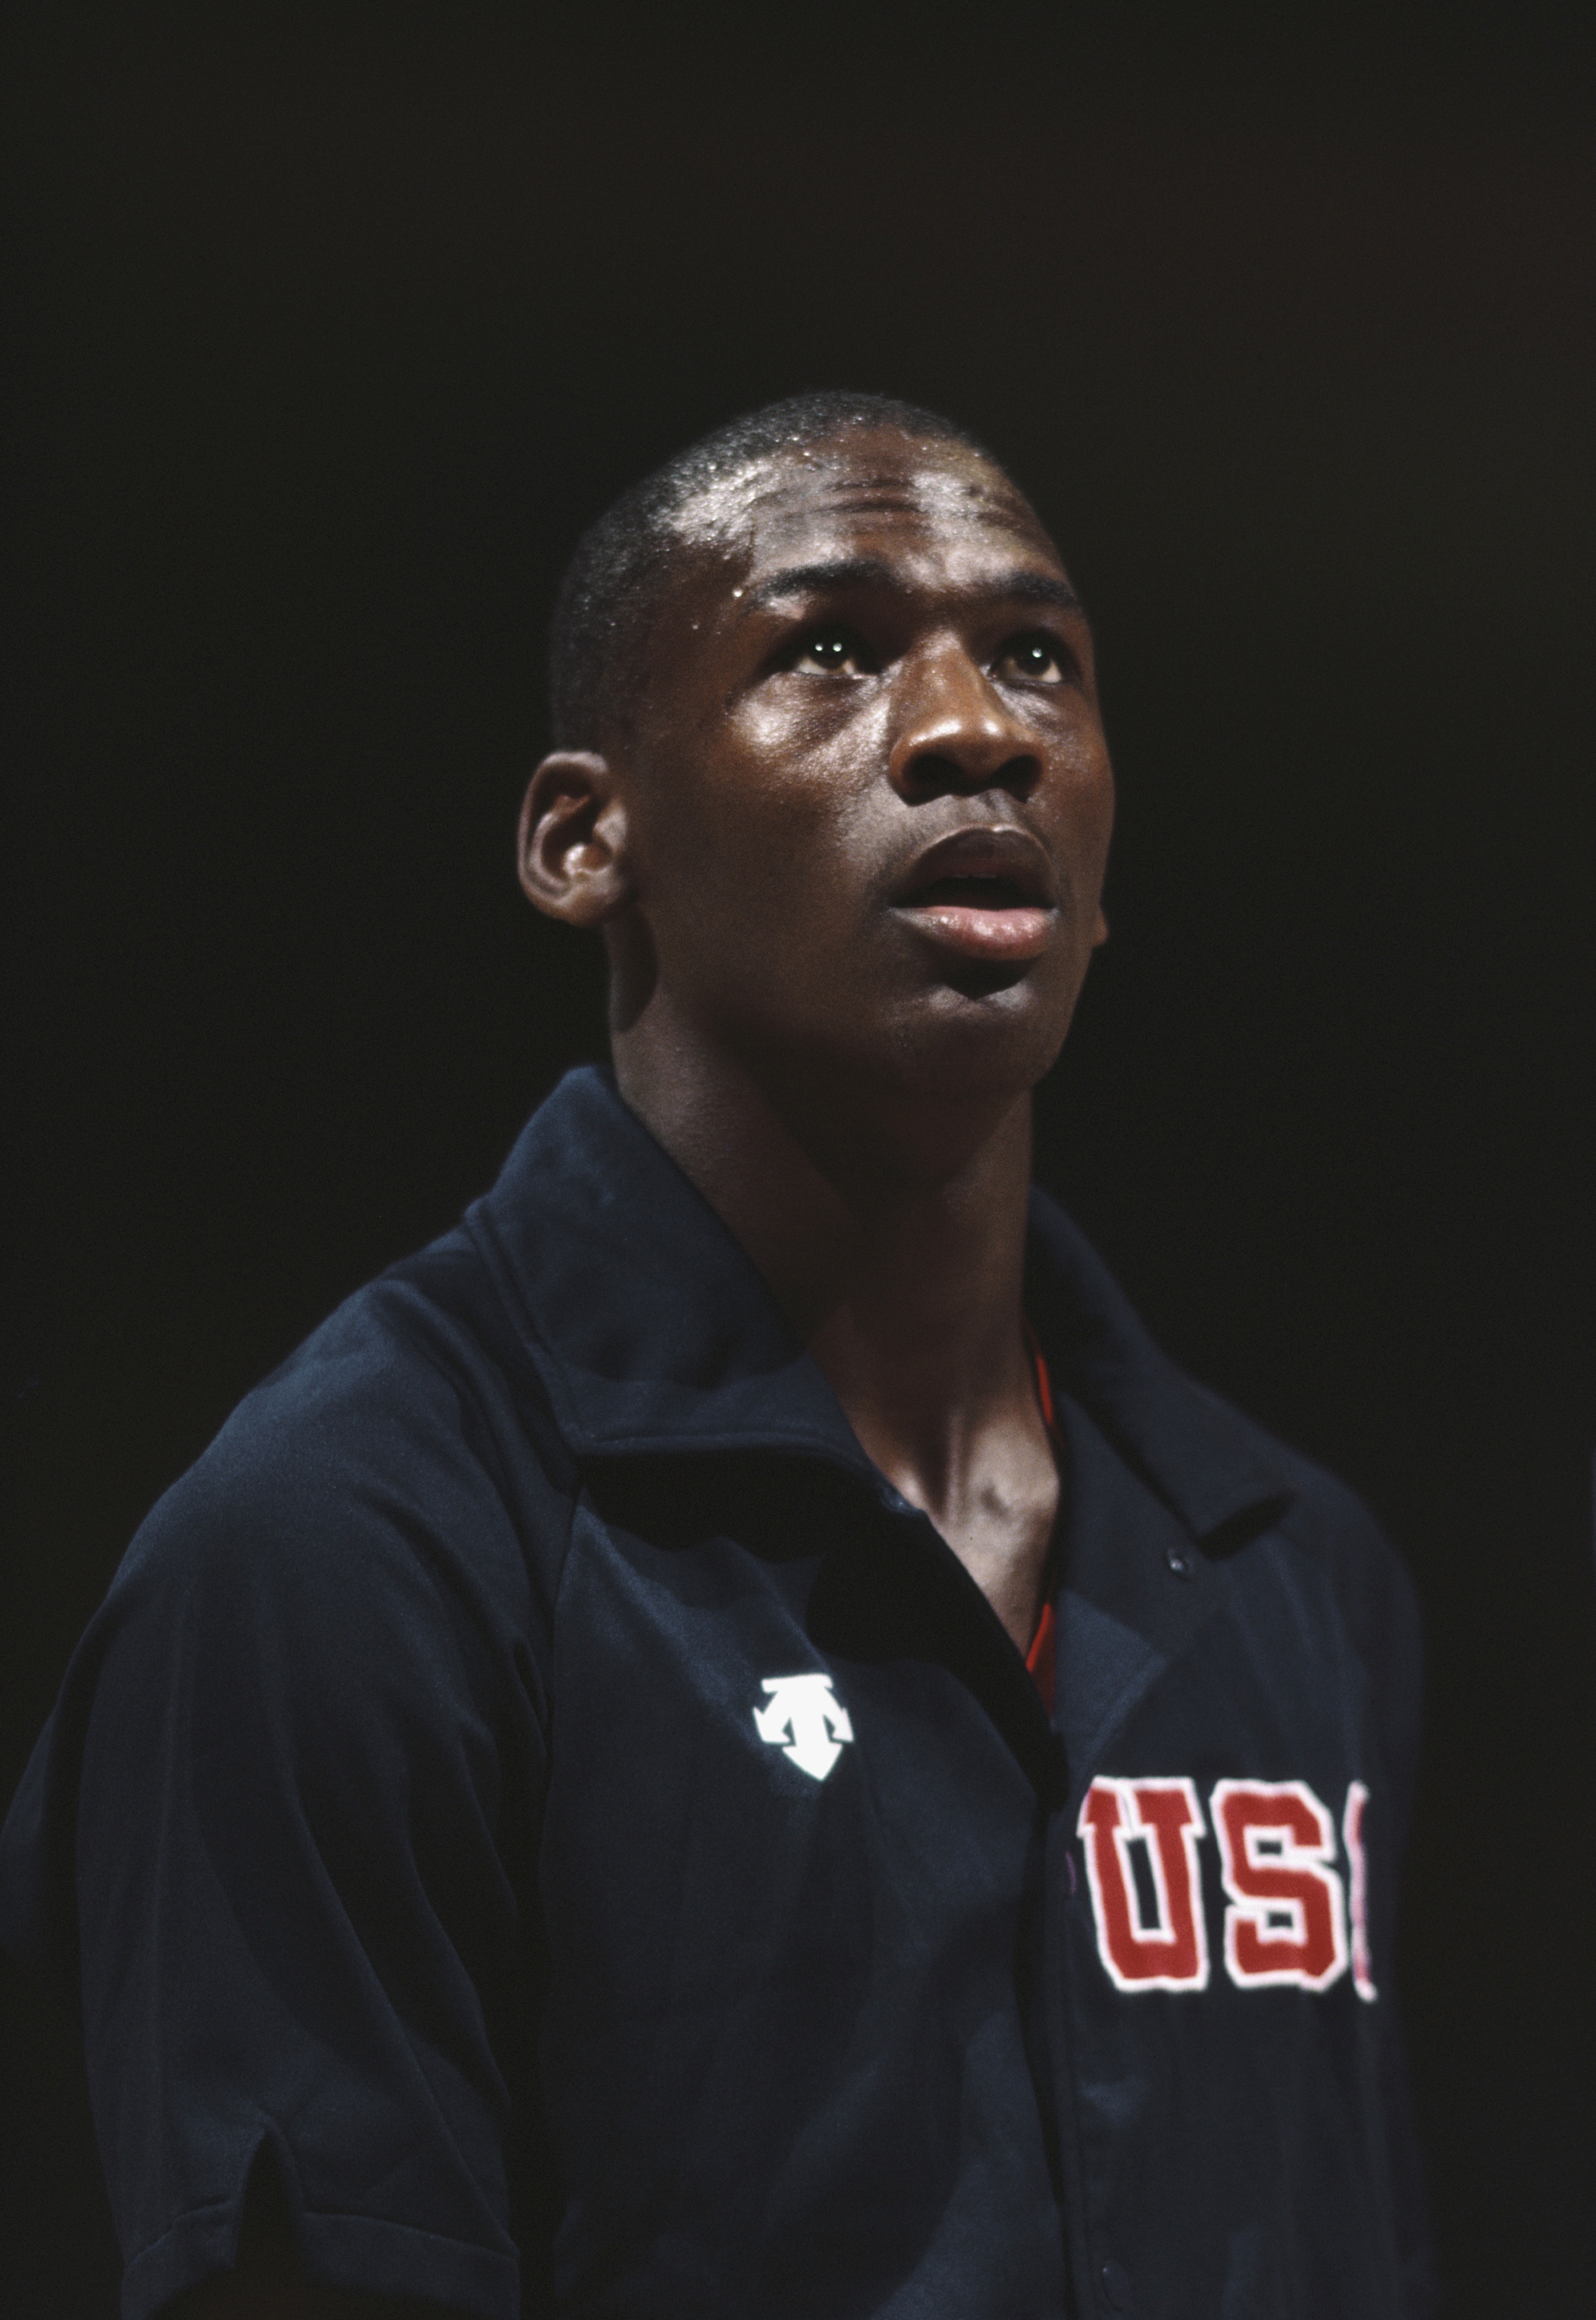 Un giovane Michael Jordan, tra le fila della squadra olimpica di basket statunitense, con cui vincerà la medaglia d'oro. Diventerà poi un grande campione professionista